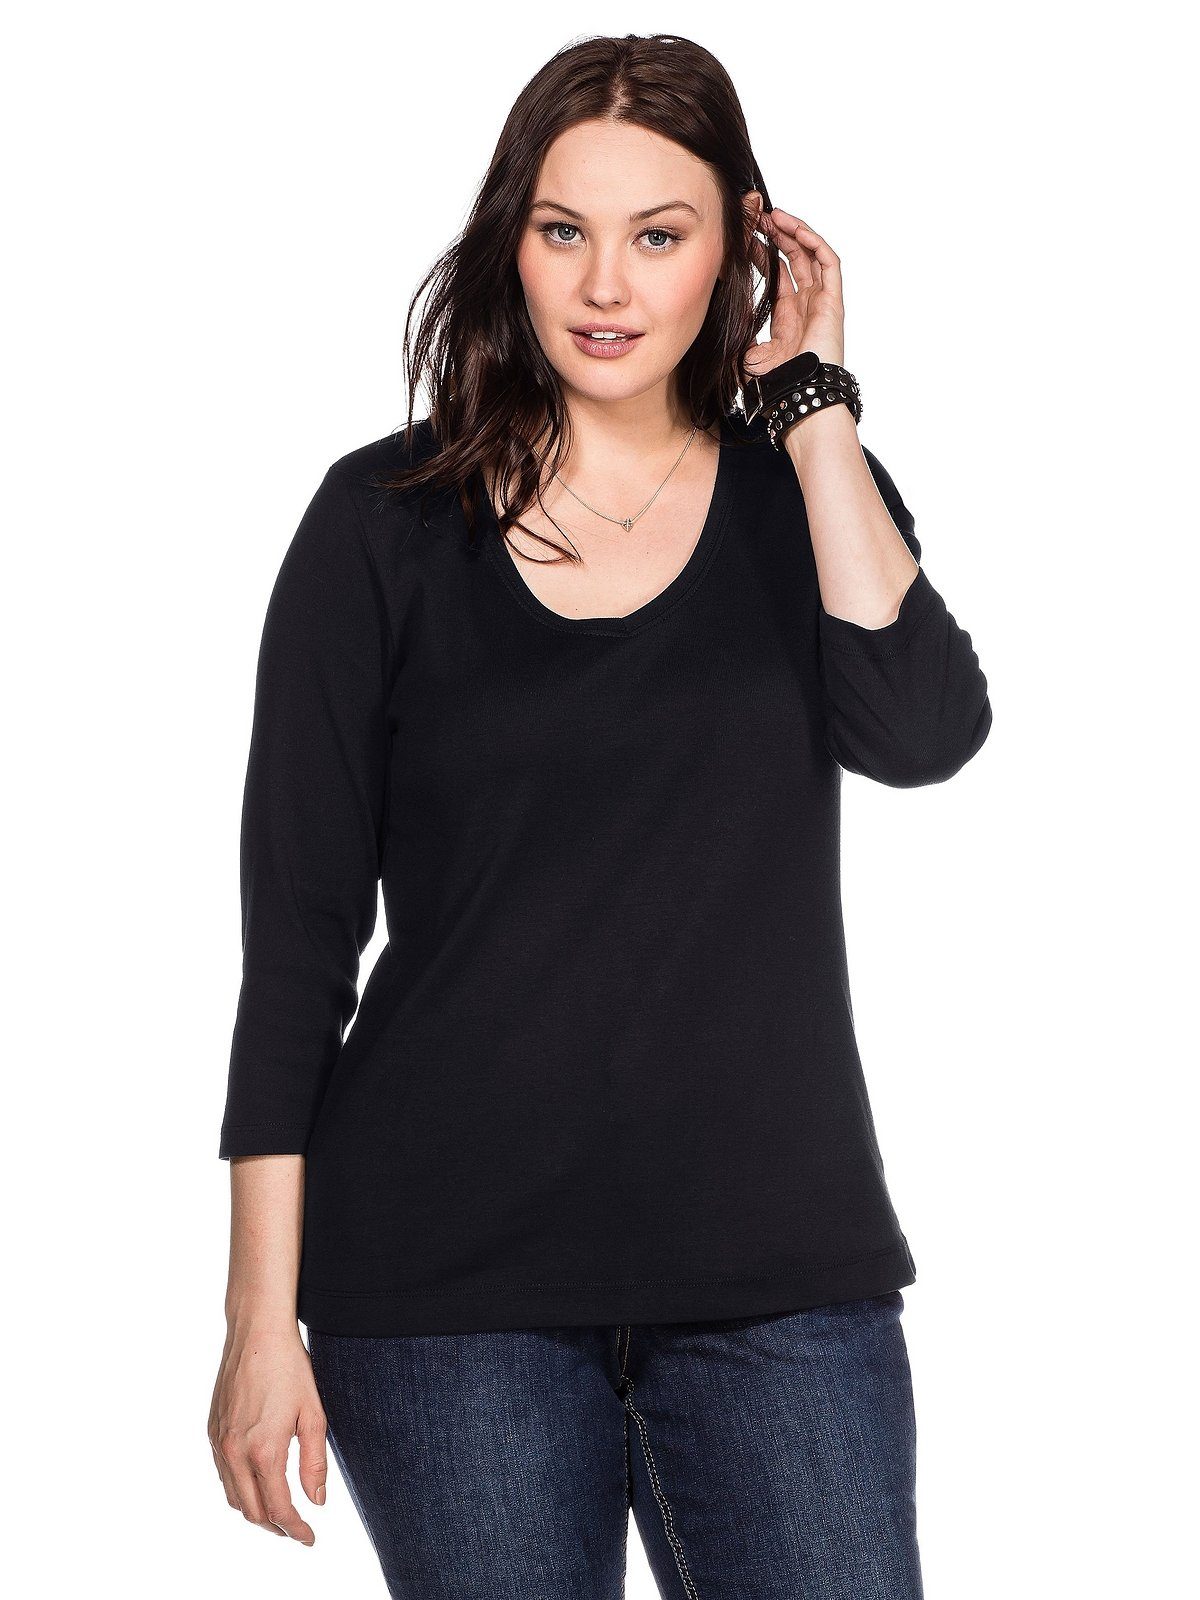 Shirtware aus gerippte Sheego reiner 3/4-Arm-Shirt Größen in Baumwolle, Baumwollqualität Große Fein